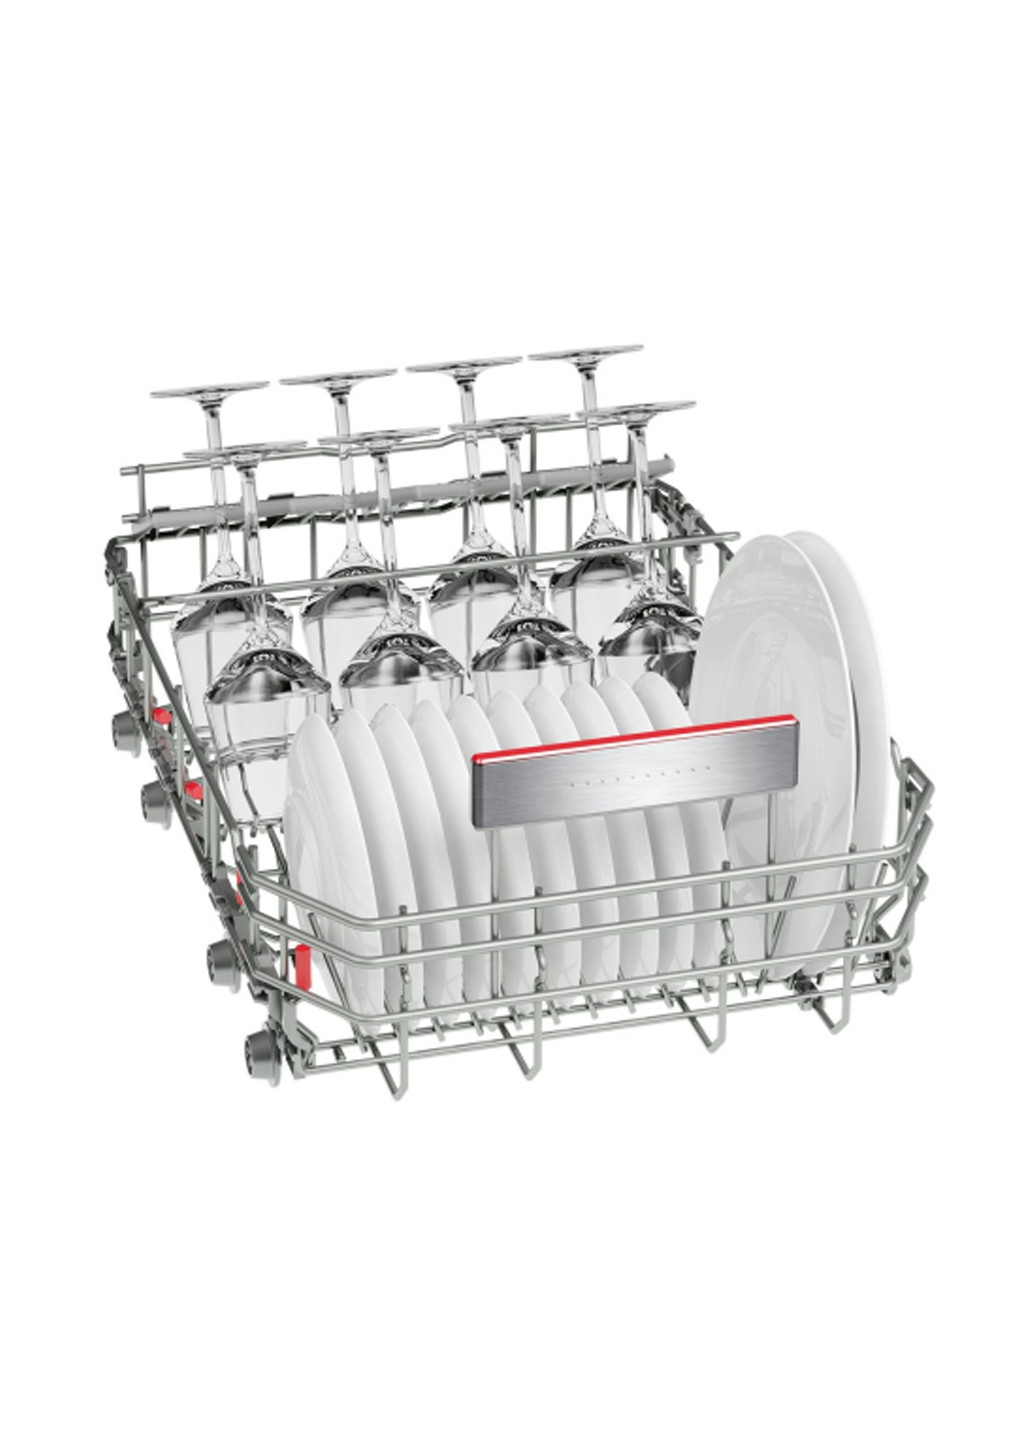 Посудомоечная машина полновстраиваемая Bosch SPV66TX01E